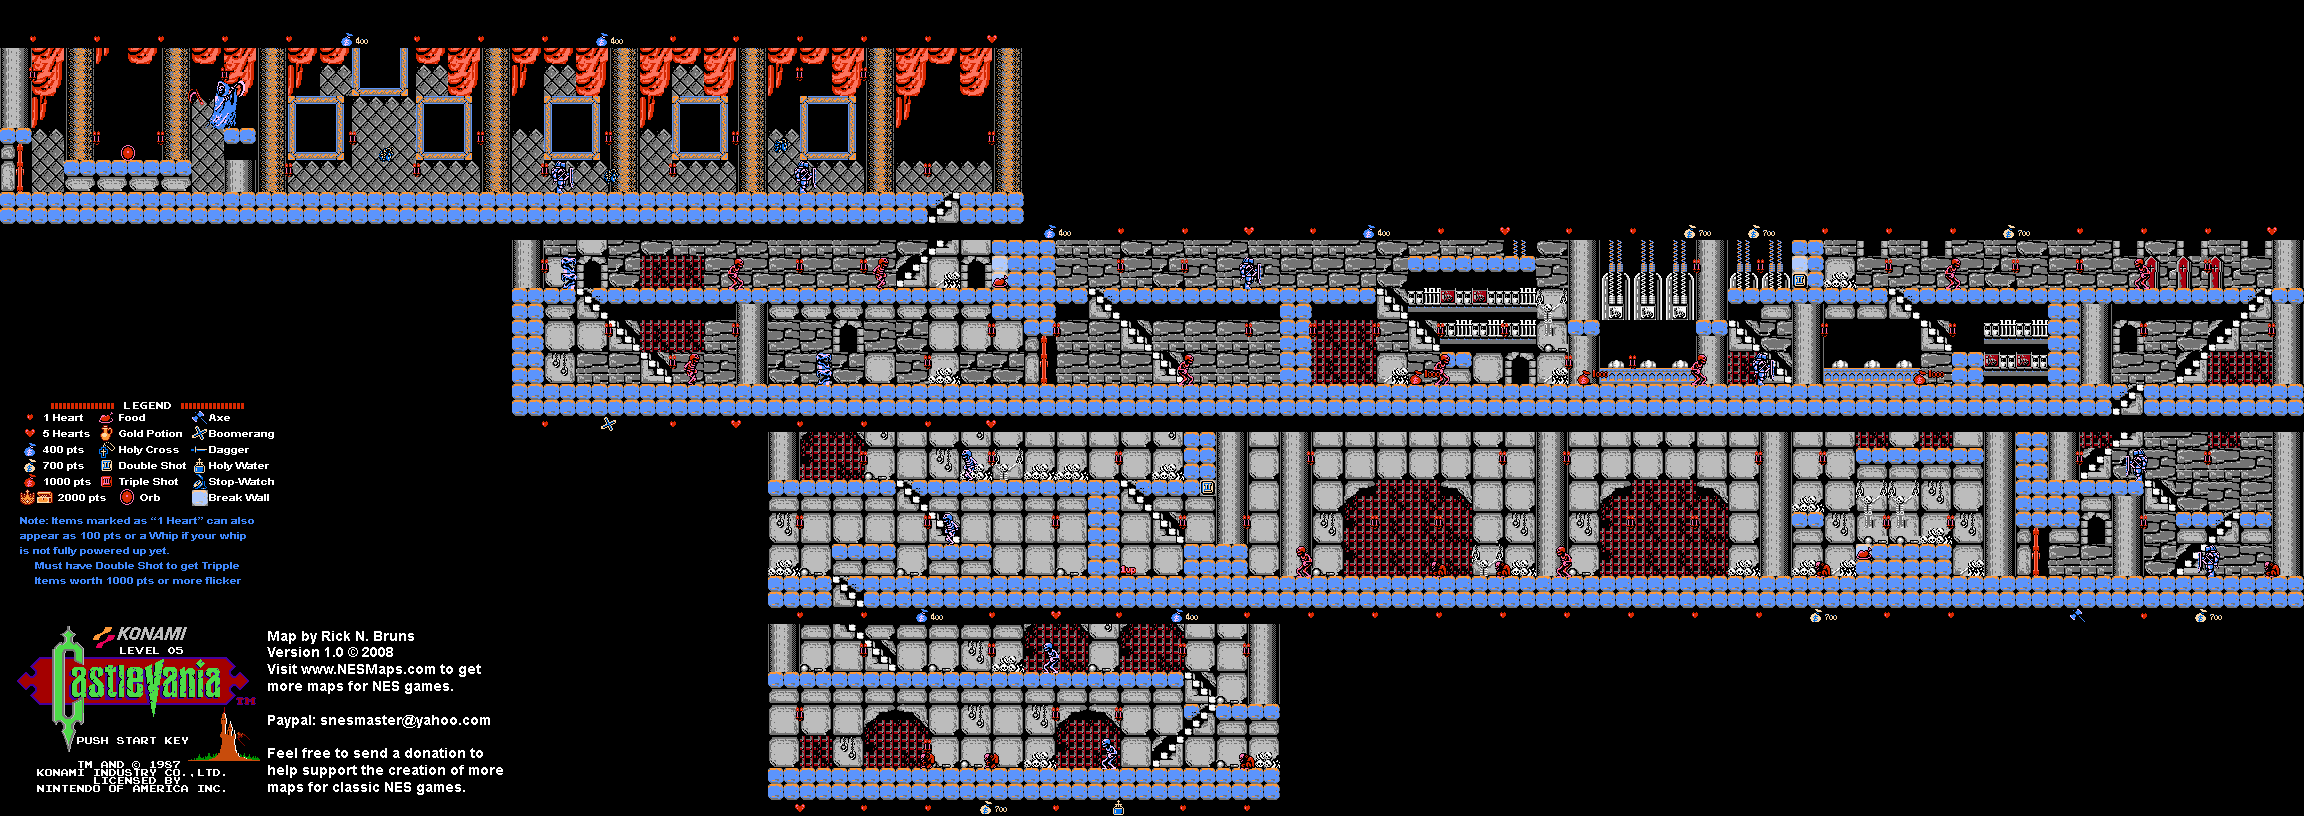 Castlevania - Level 5 Nintendo NES Map